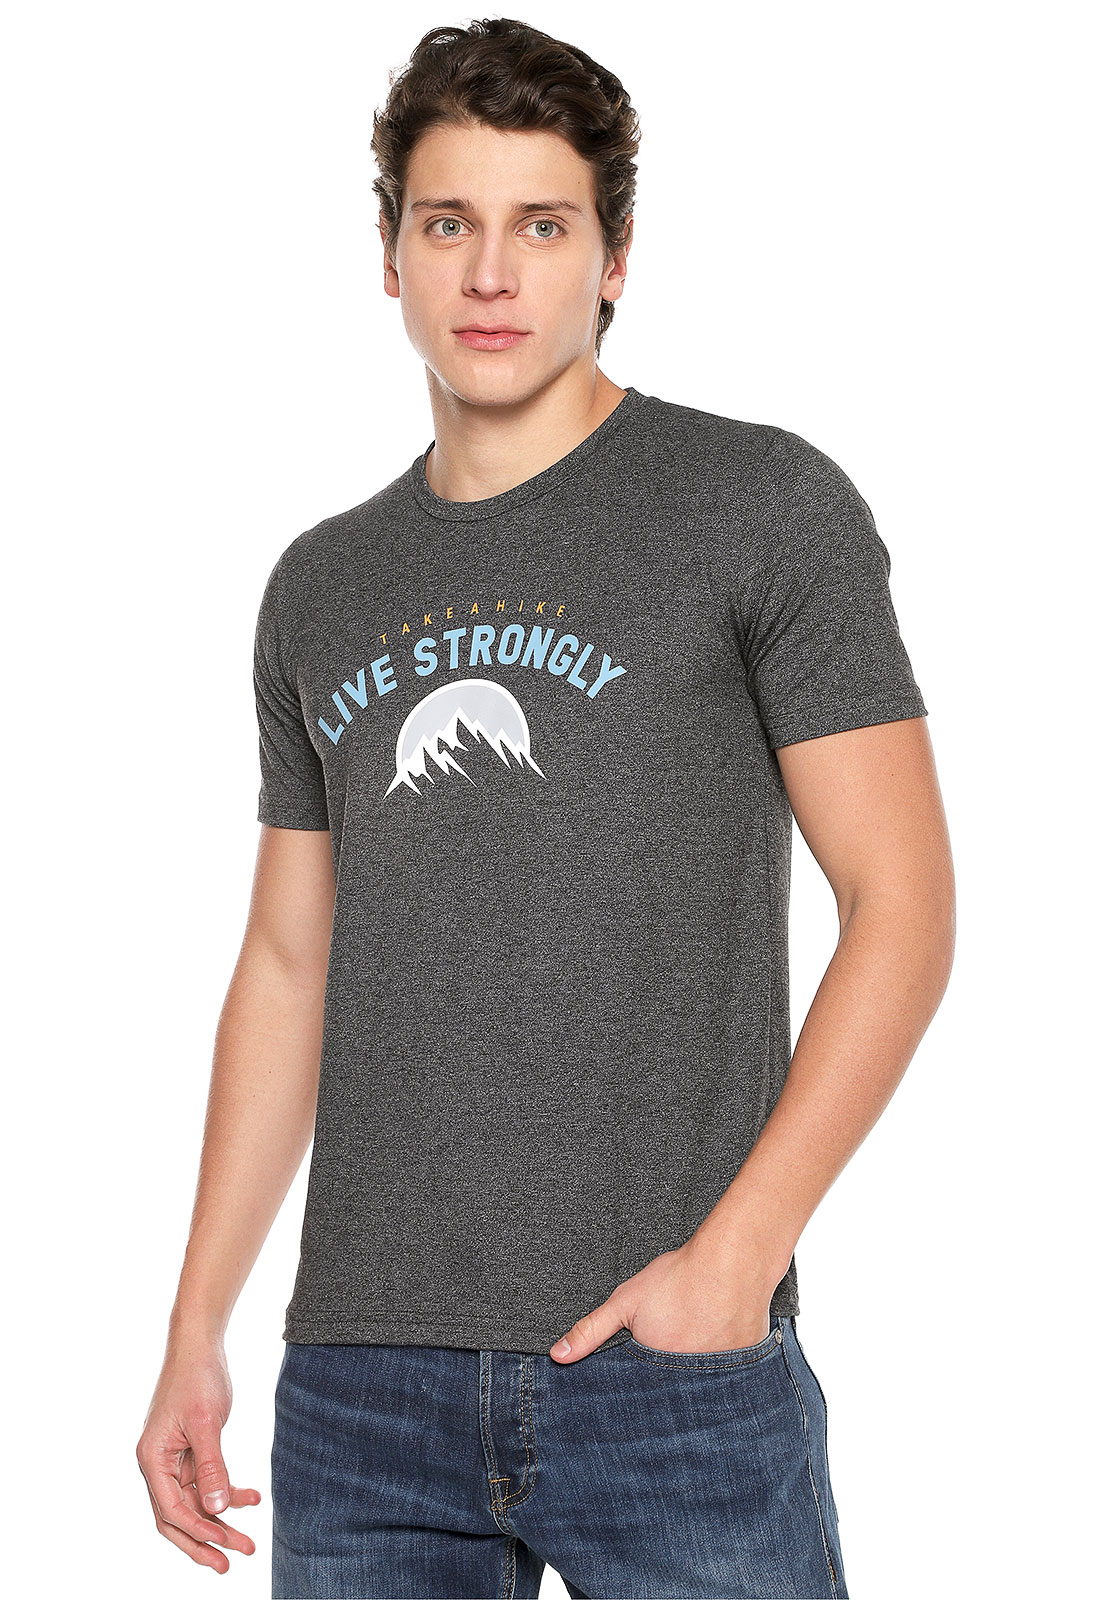 Camiseta para hombre gris Strongly